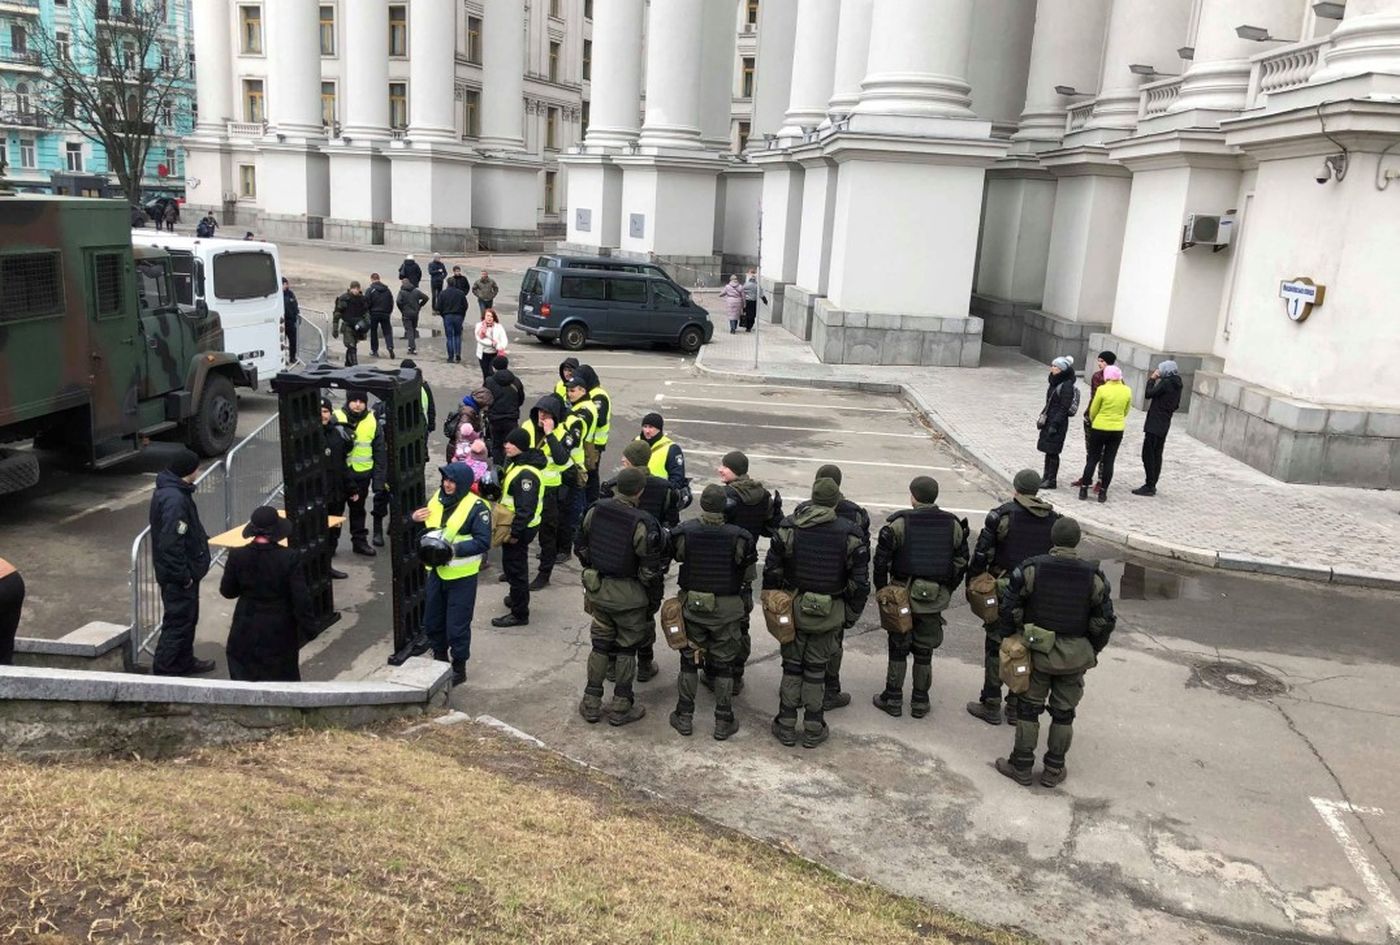 Центр Киева перекрыт из-за мероприятия с участием Порошенко